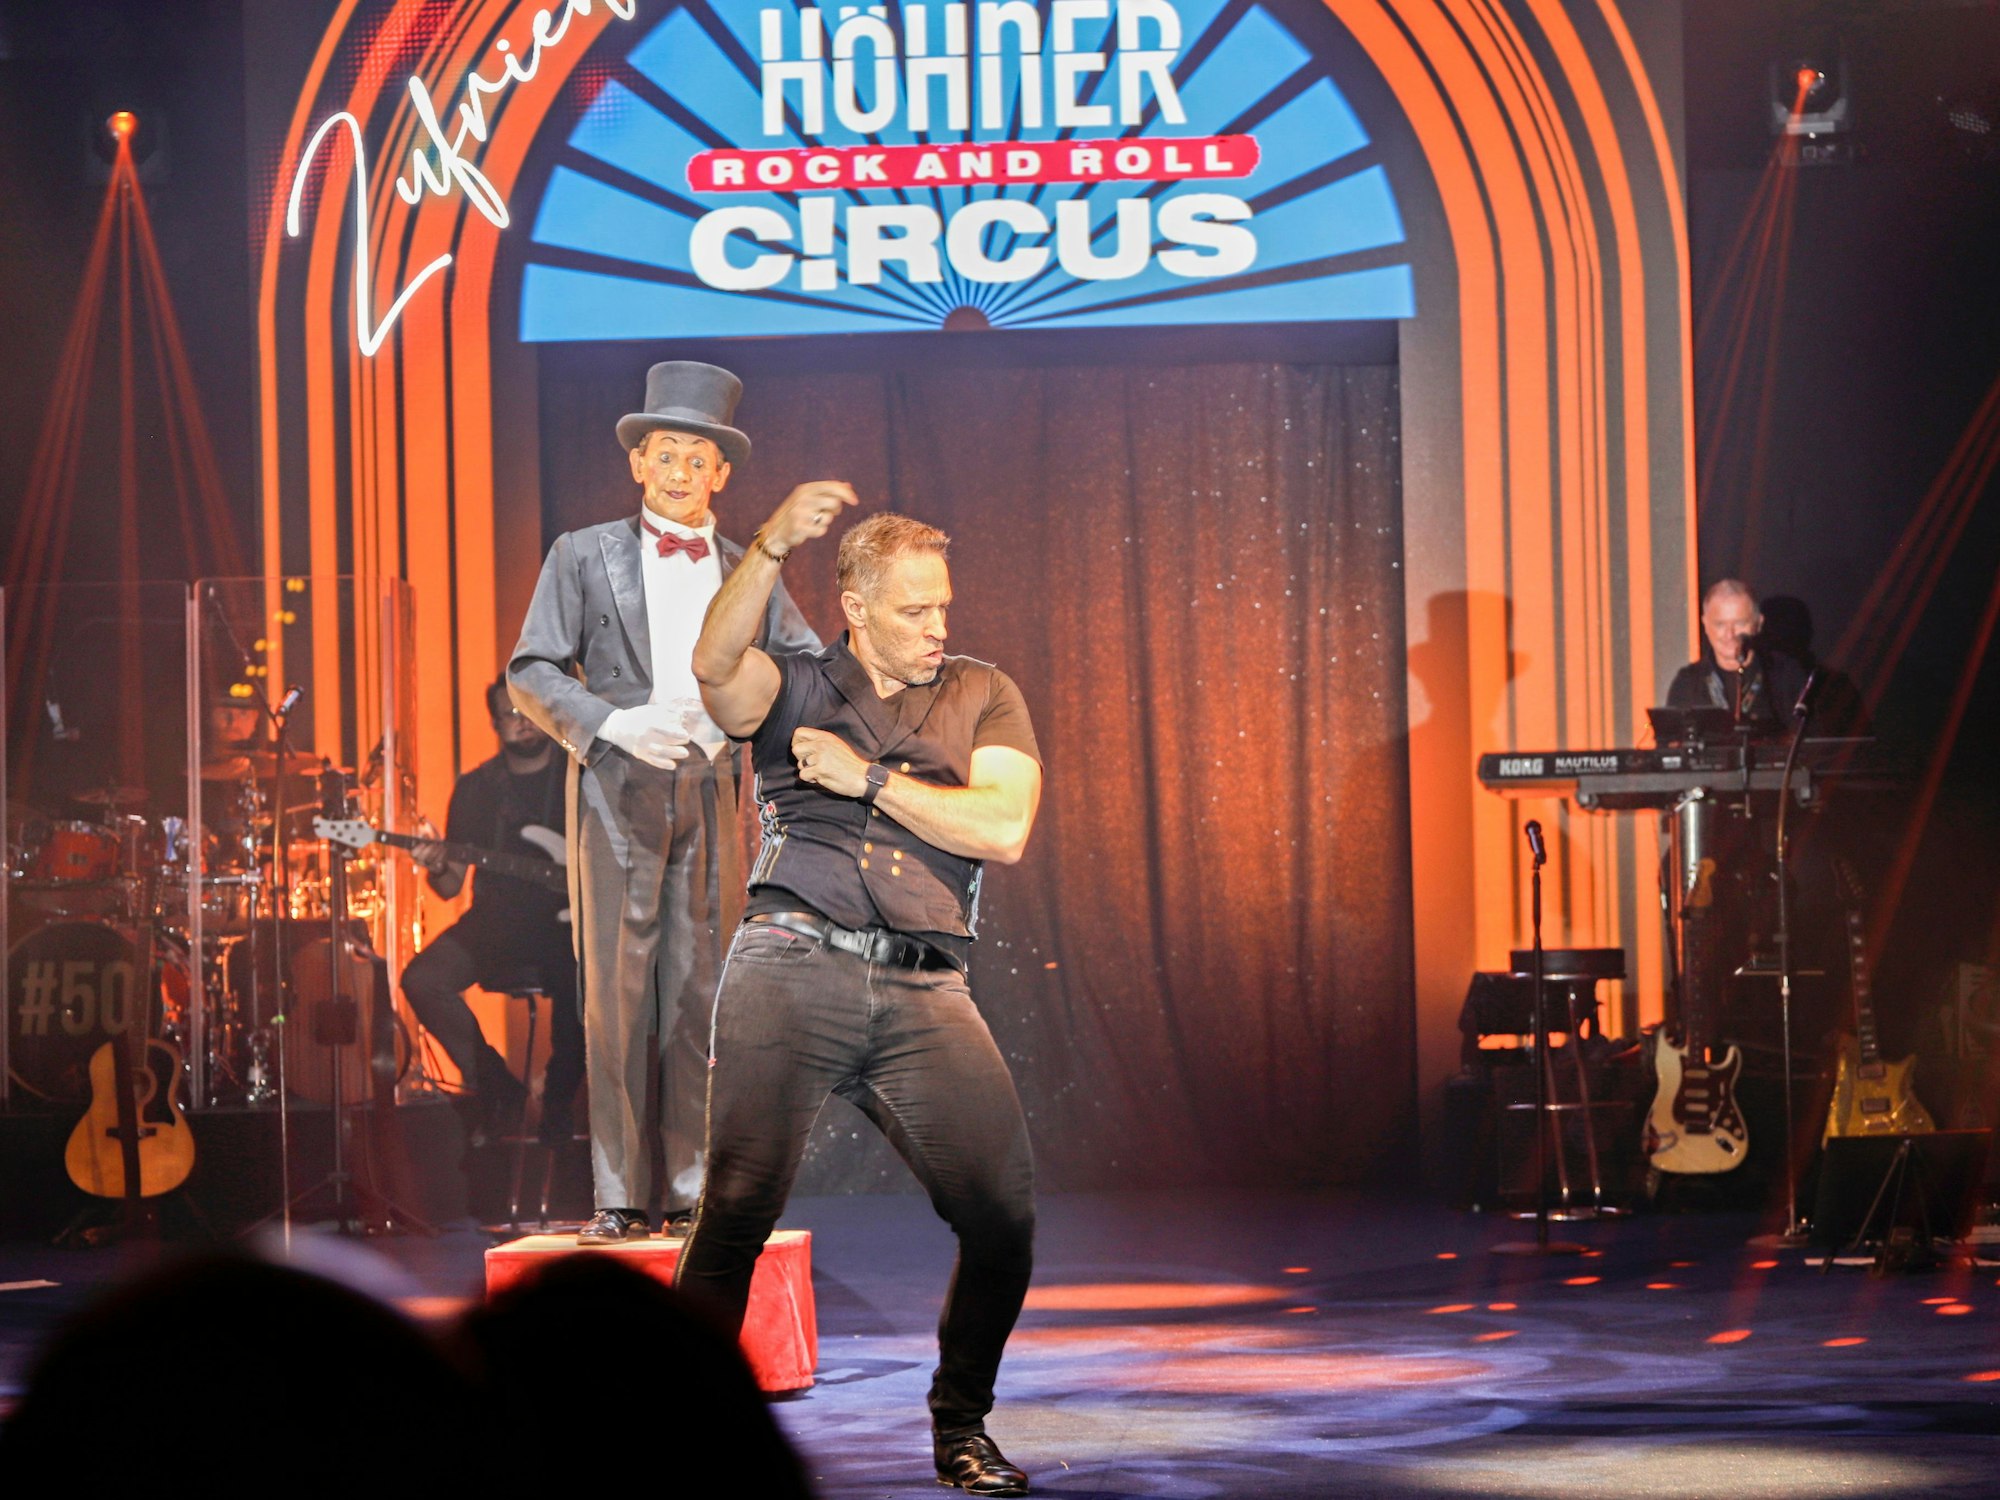 Höhner Sänger Patrick Lück beim Rock and Roll Circus auf der Bühne.